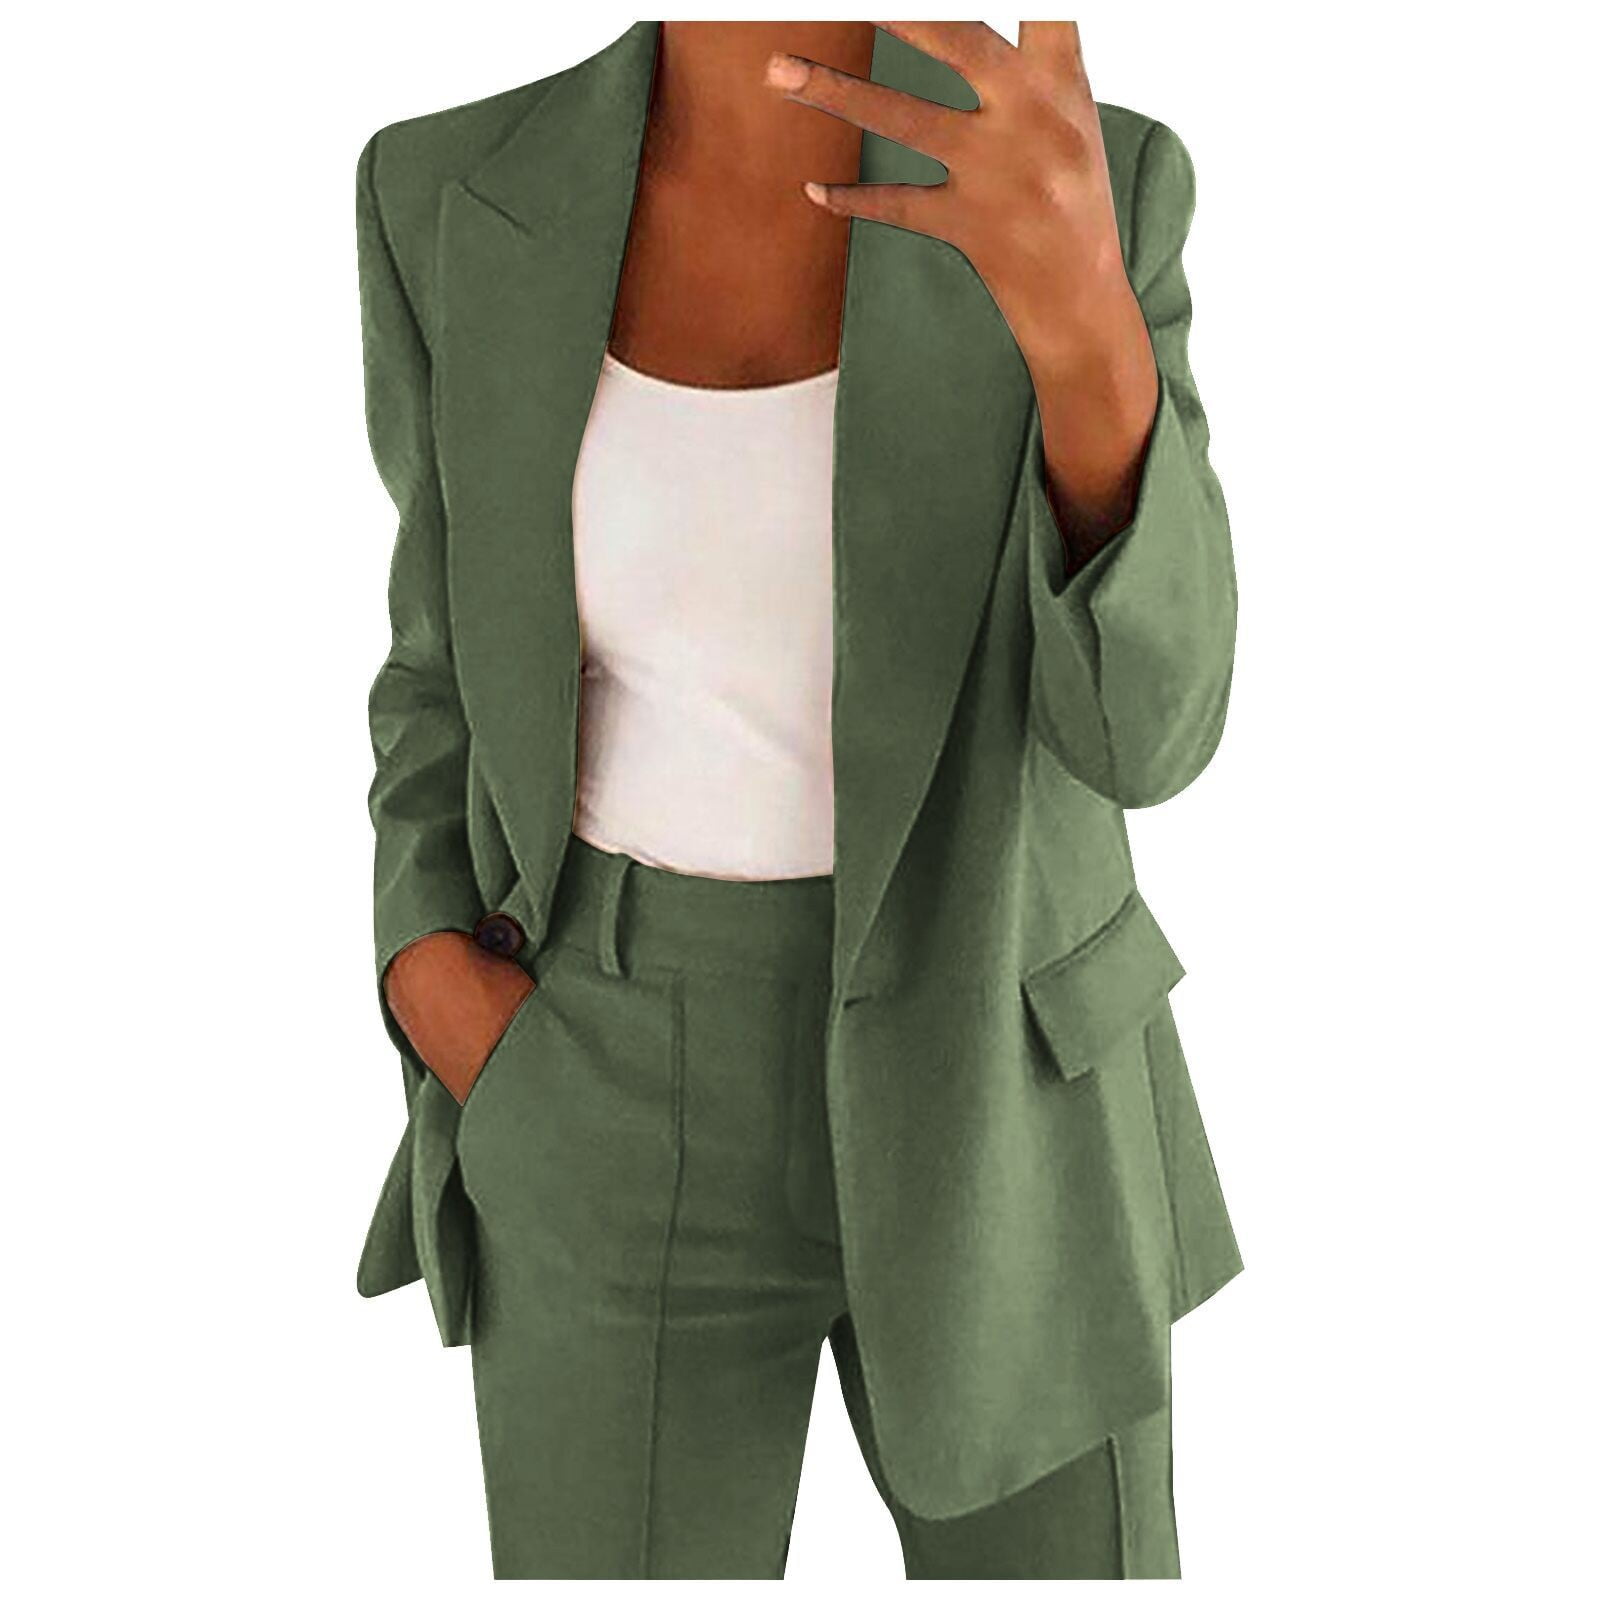 KBODIU Women Casual Blazers Jacket, Open Front Long Sleeve Work Office ...